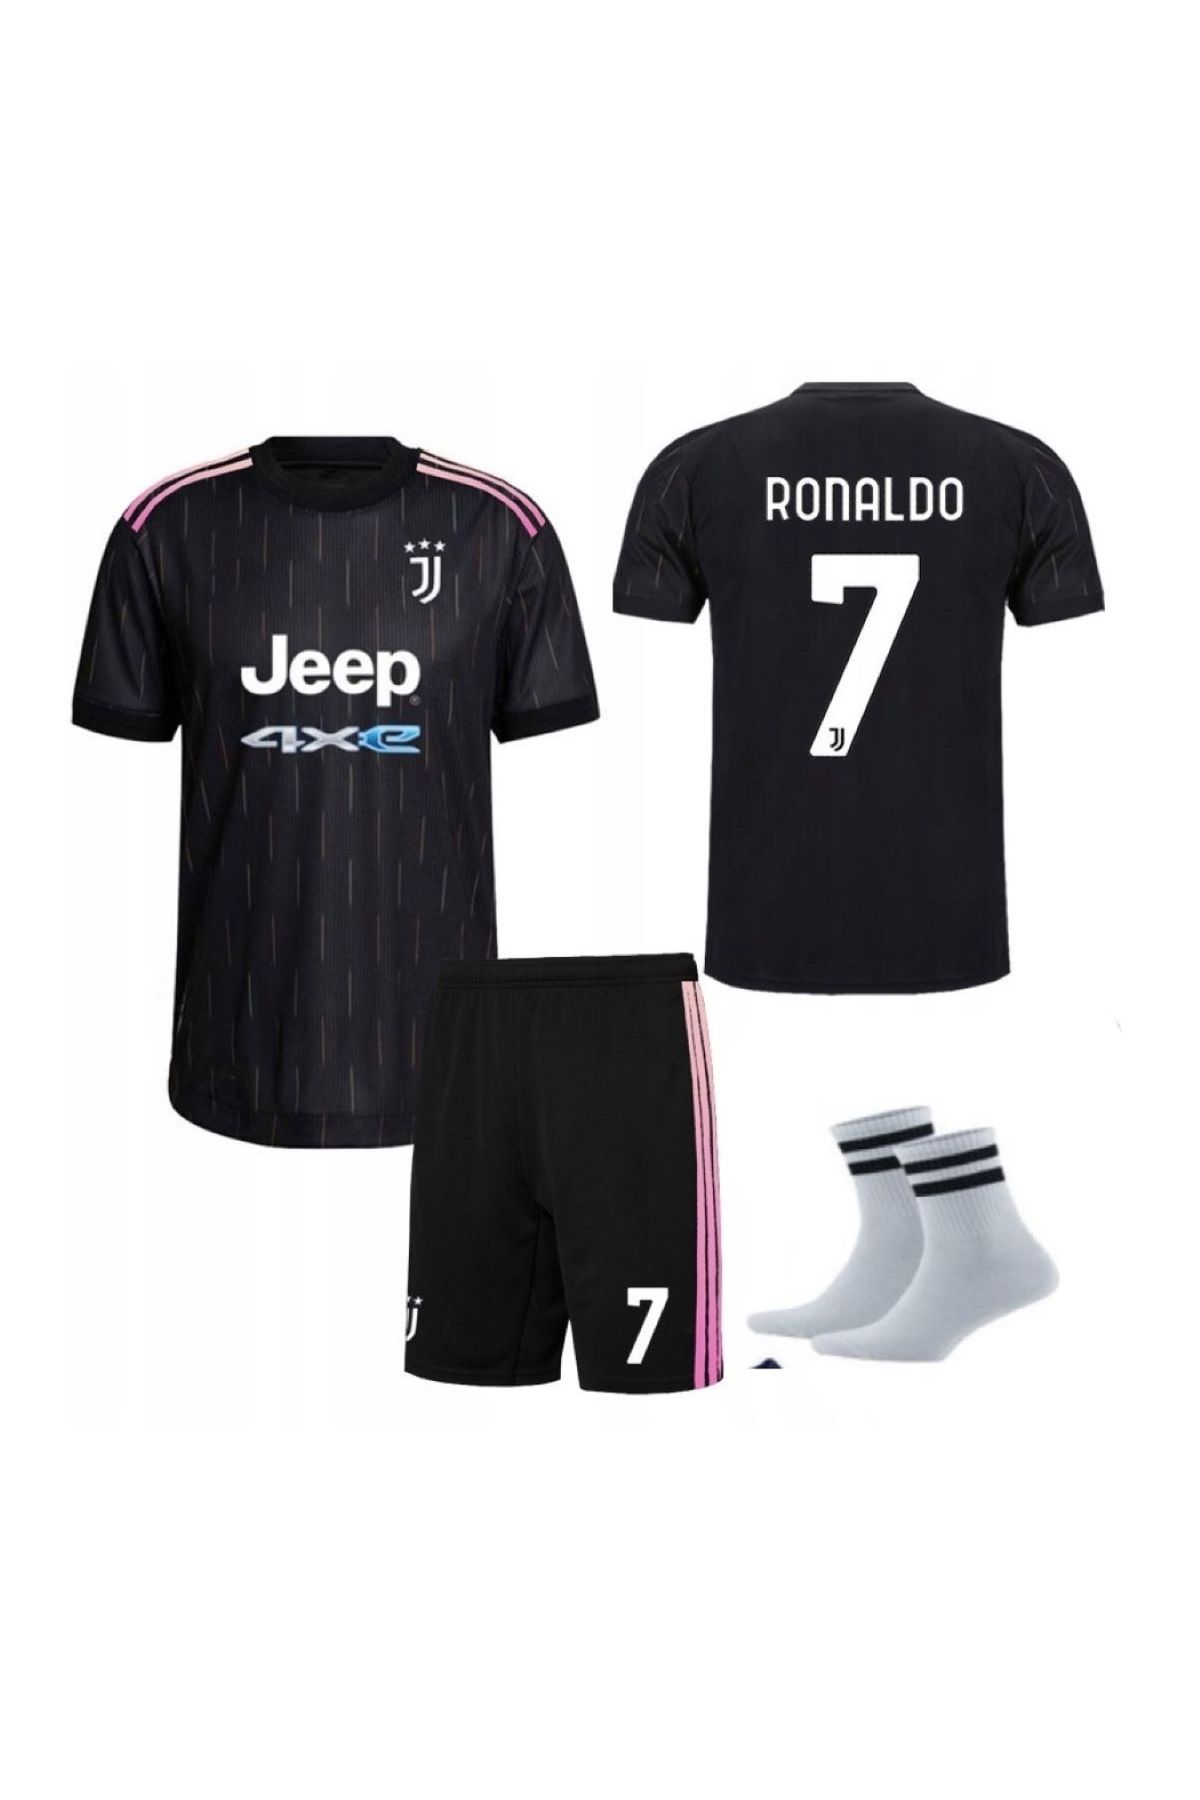 yenteks Ronaldo Juventus Siyah Çocuk Futbol Forması 21/22 Sezon 4'lü Set Özel Tasarım Şpşpş